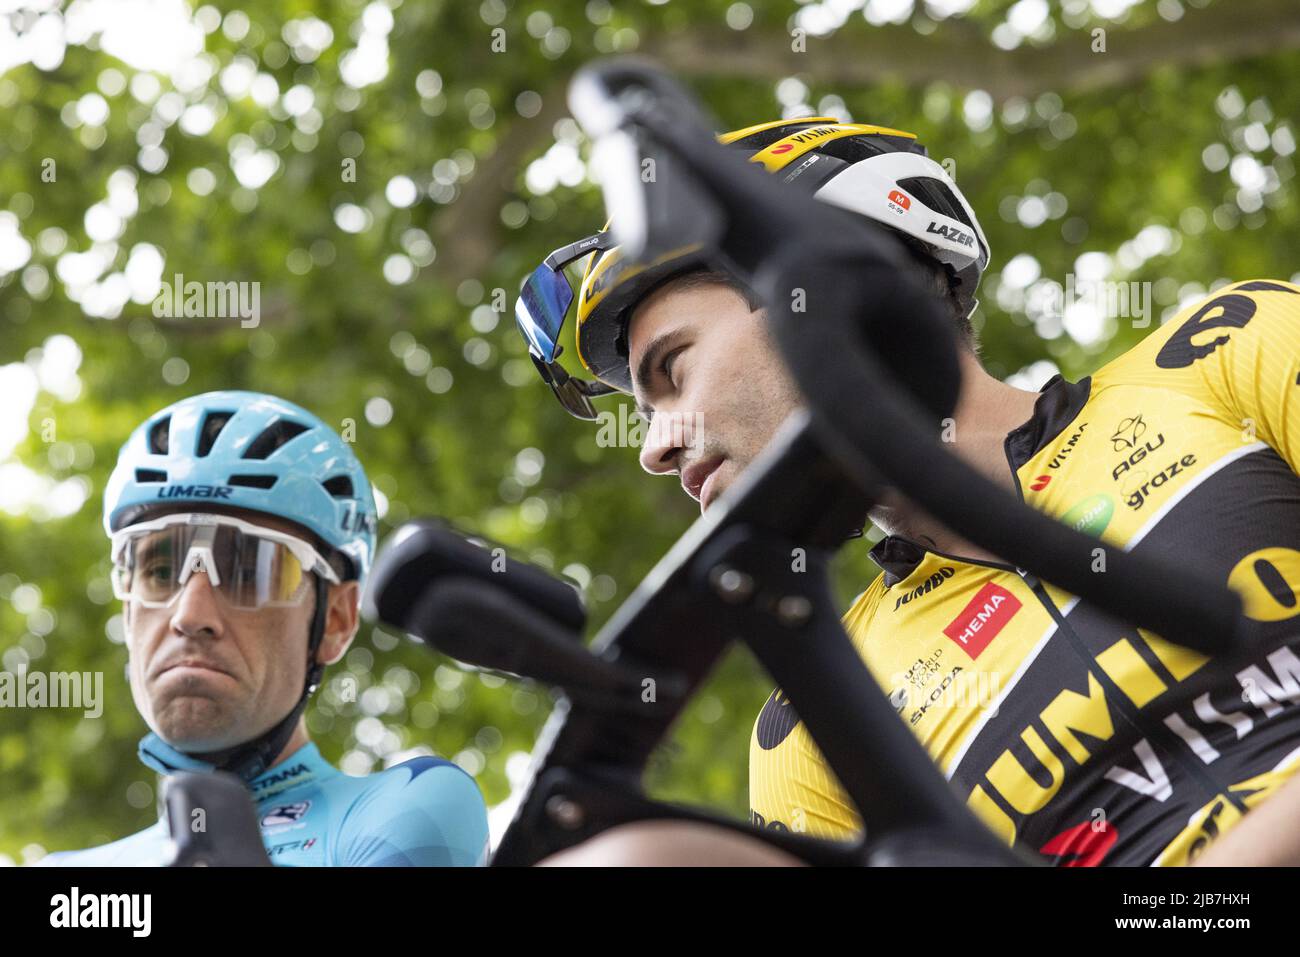 MAASTRICHT - ciclista Tom Dumoulin con il ciclista italiano Vincenzo Nibali prima dello start del RSM-Wealer Ronde, un criterio a Maastricht. Dumoulin terminerà la sua carriera dopo questa stagione. ANP ROB ANGELAAR Foto Stock